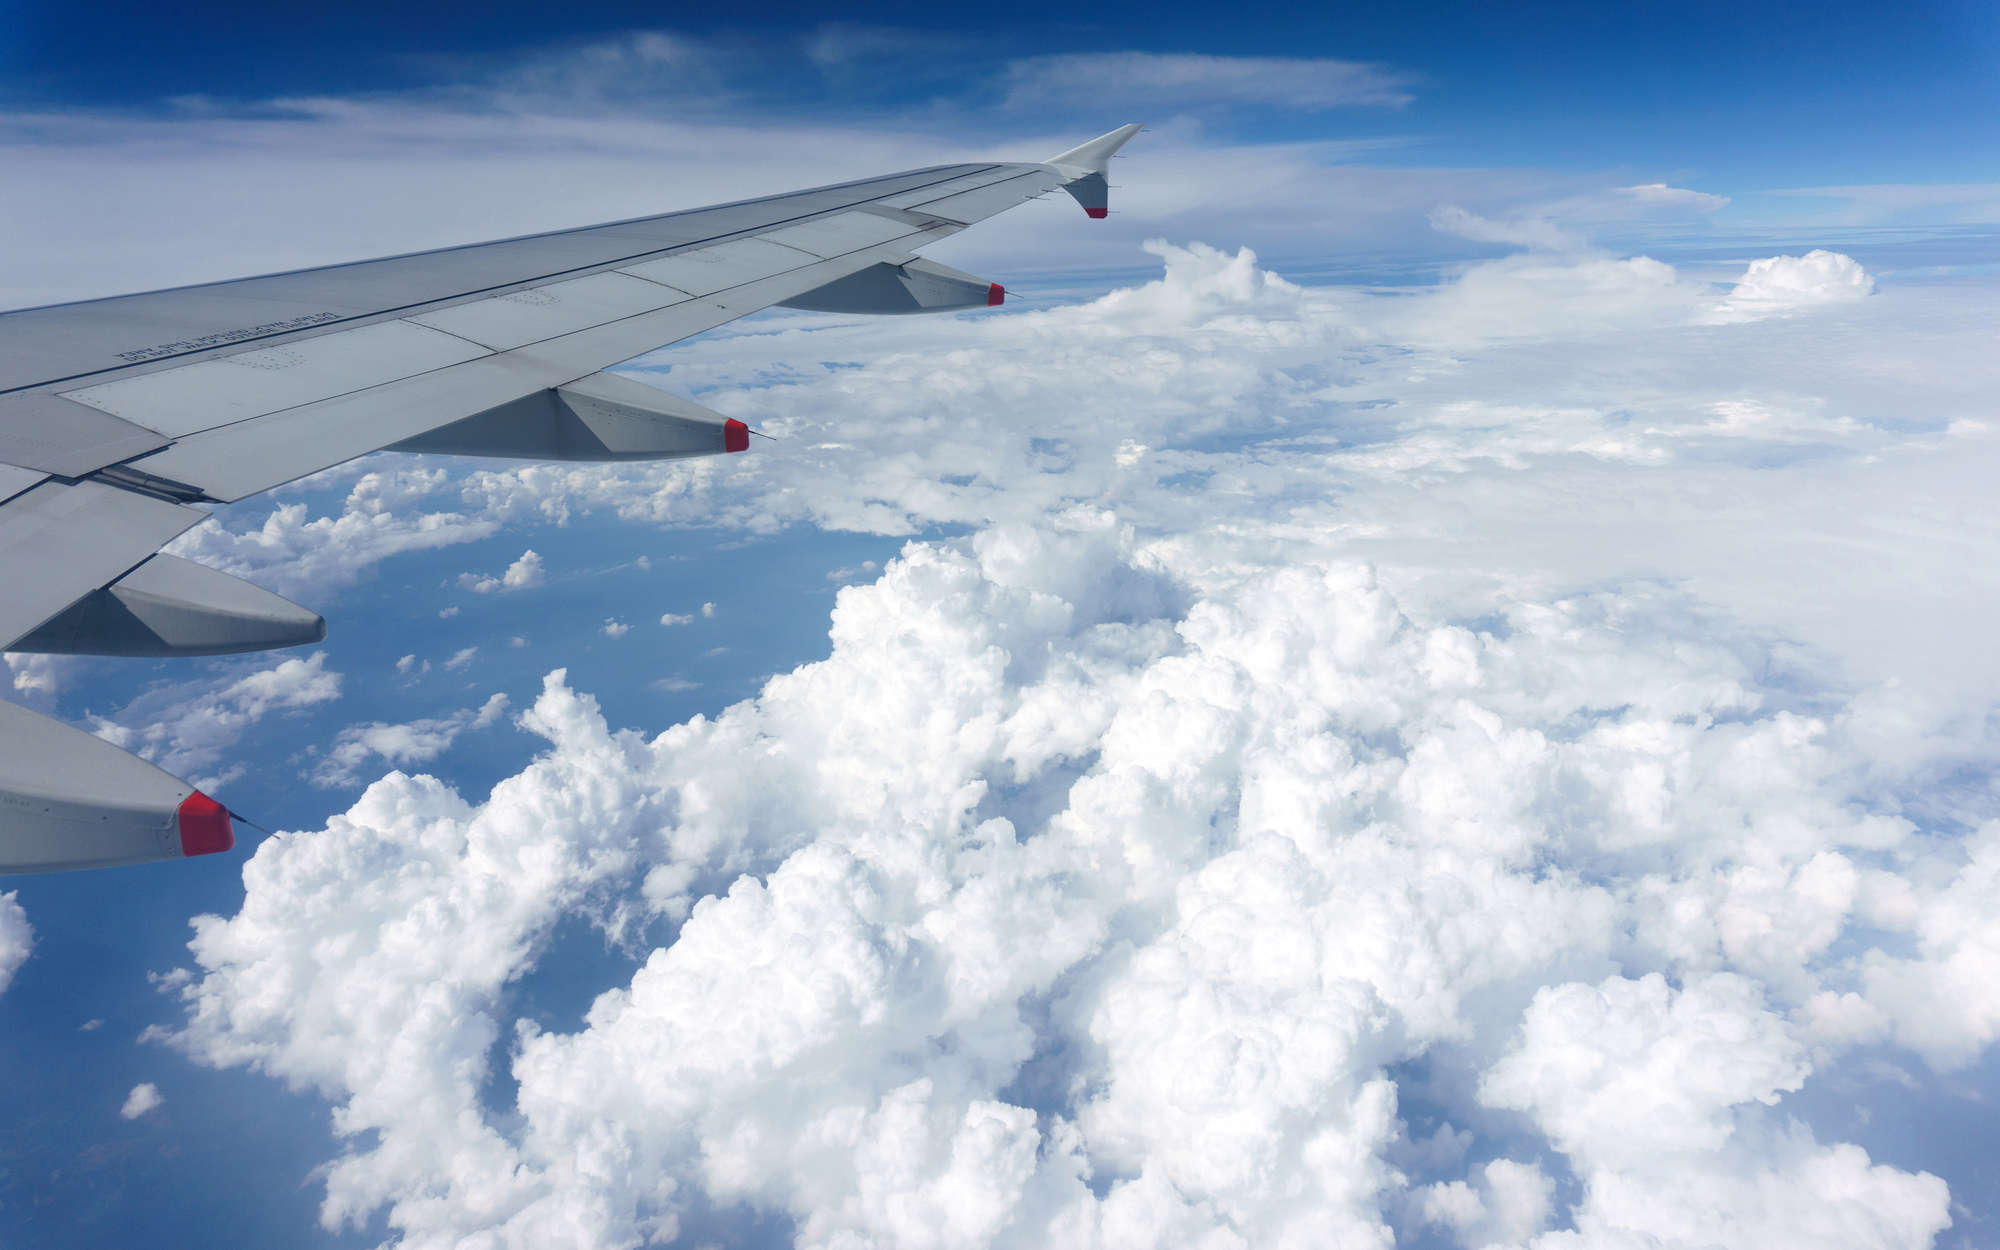             papiers peints à impression numérique avion au-dessus des nuages - intissé structuré
        